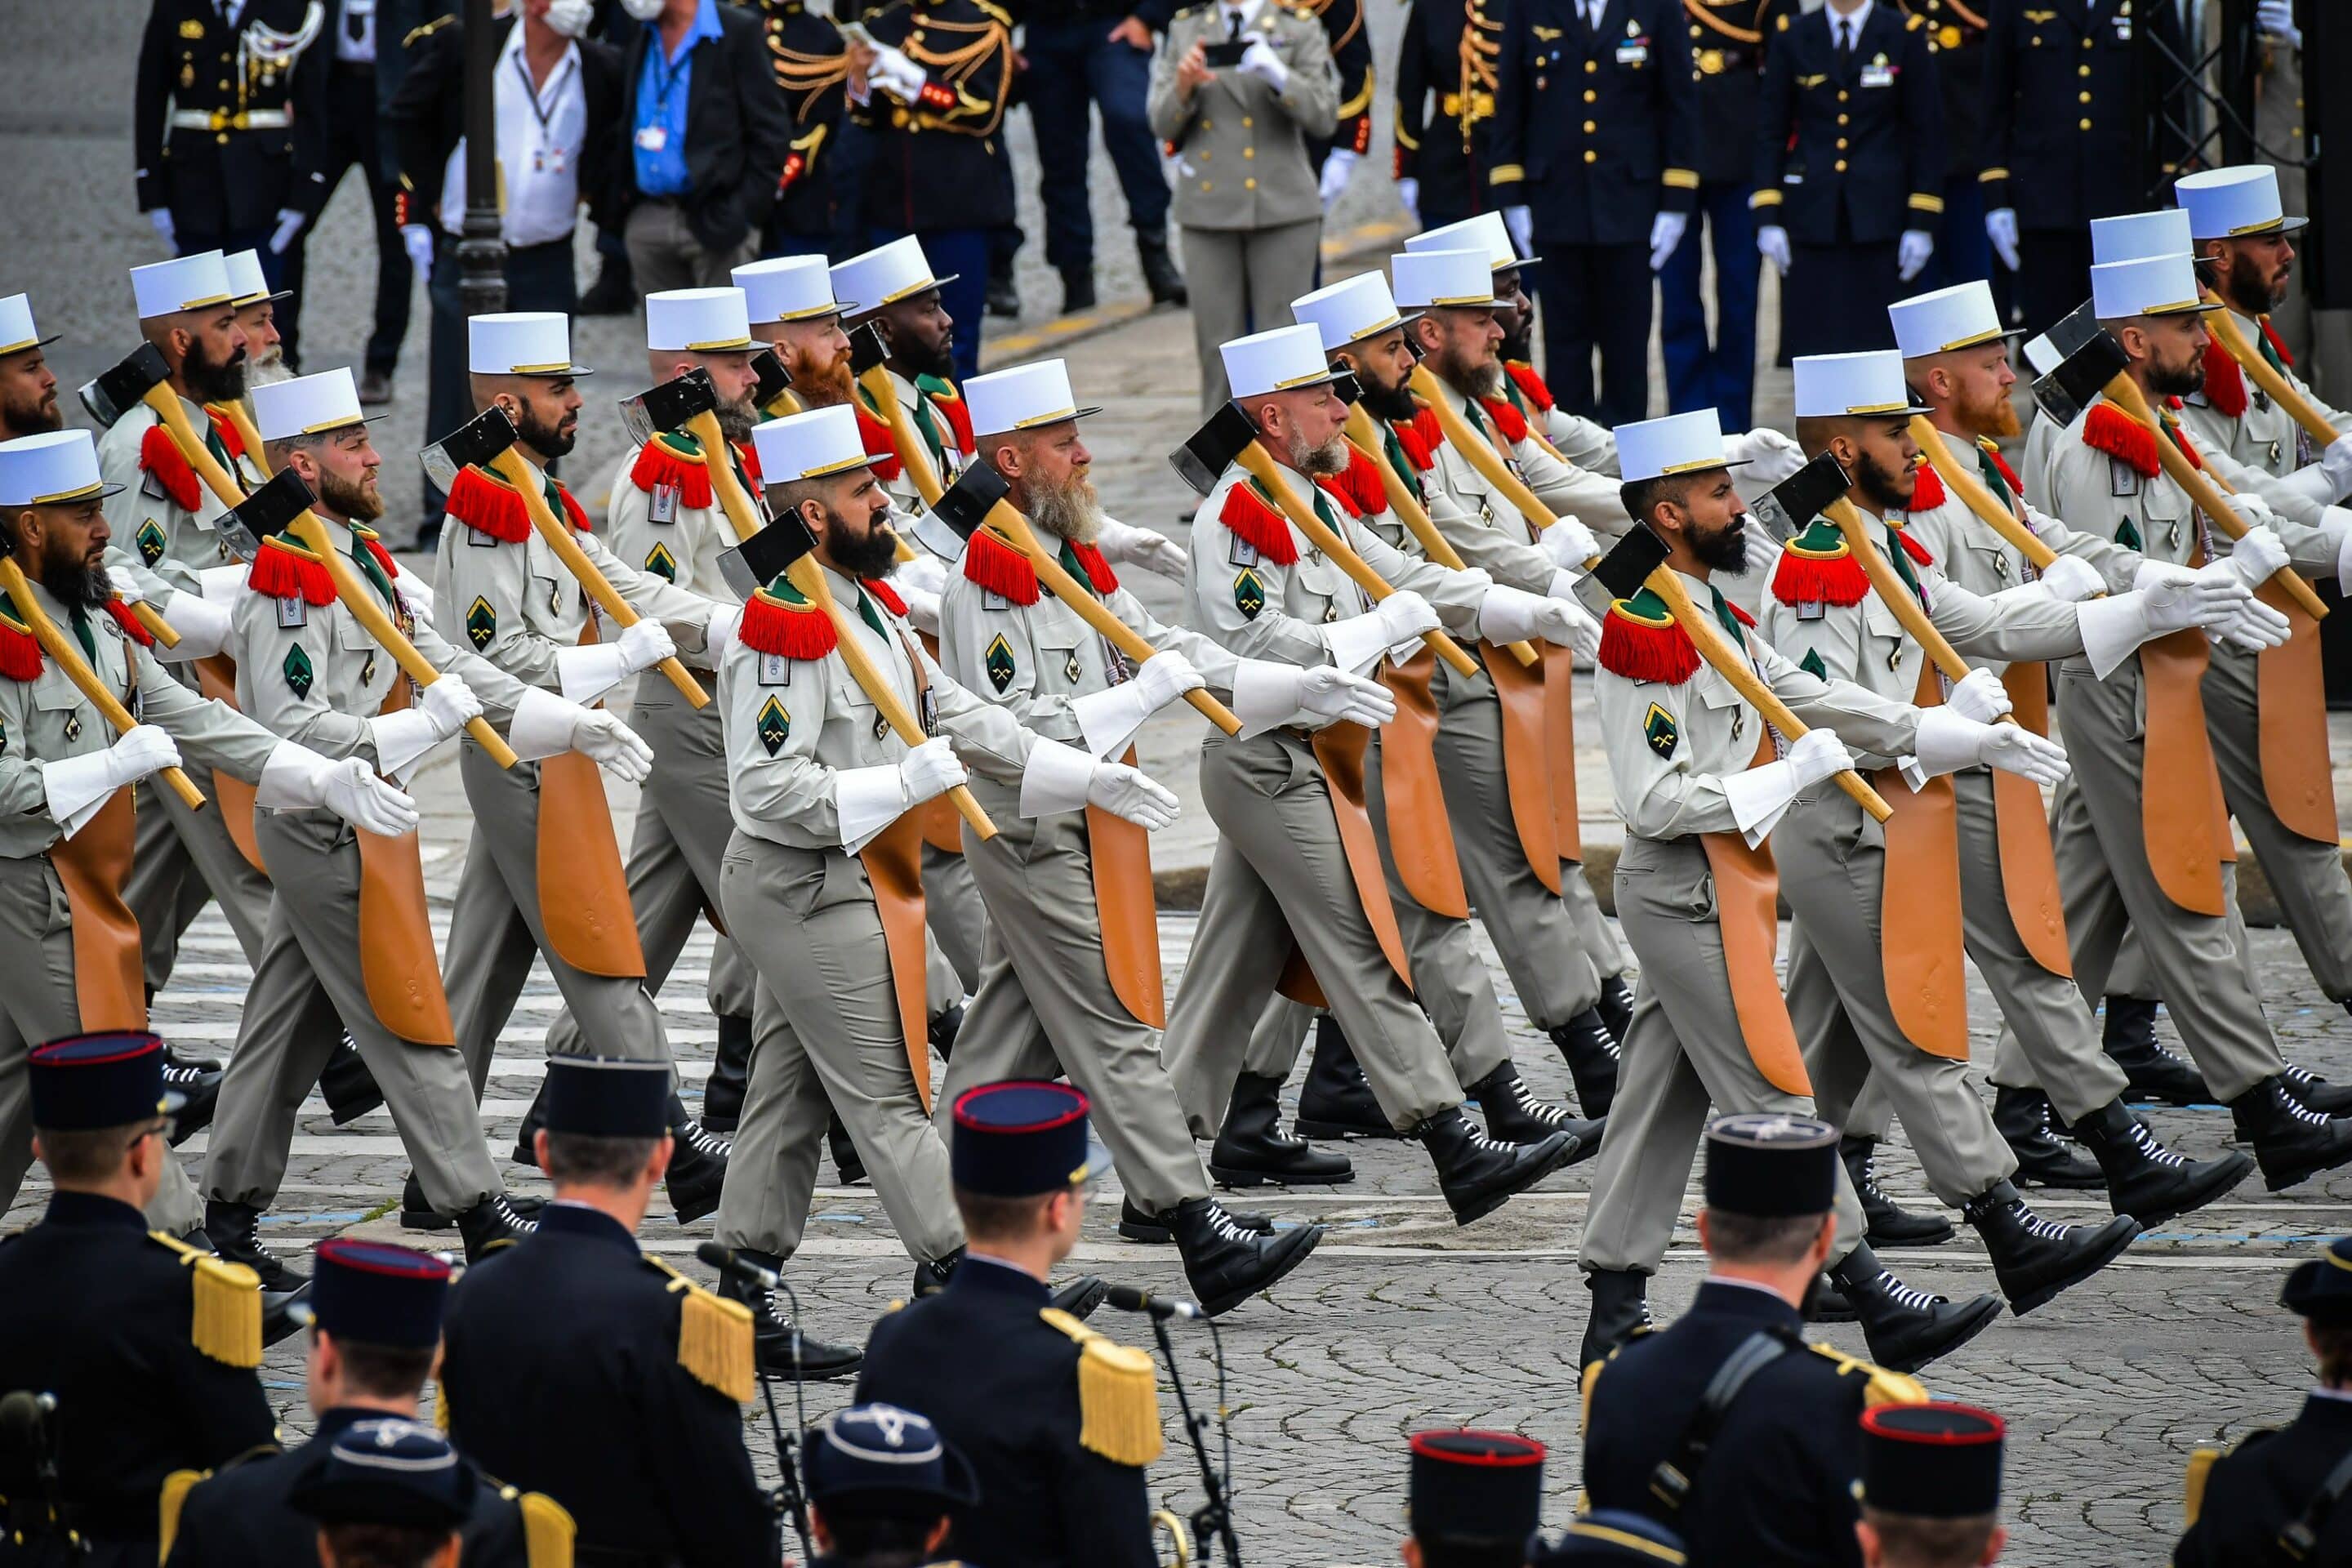 LÉGION ÉTRANGÈRE : En 2018, la Légion étrangère aura « retrouvé ses  effectifs d'il y a